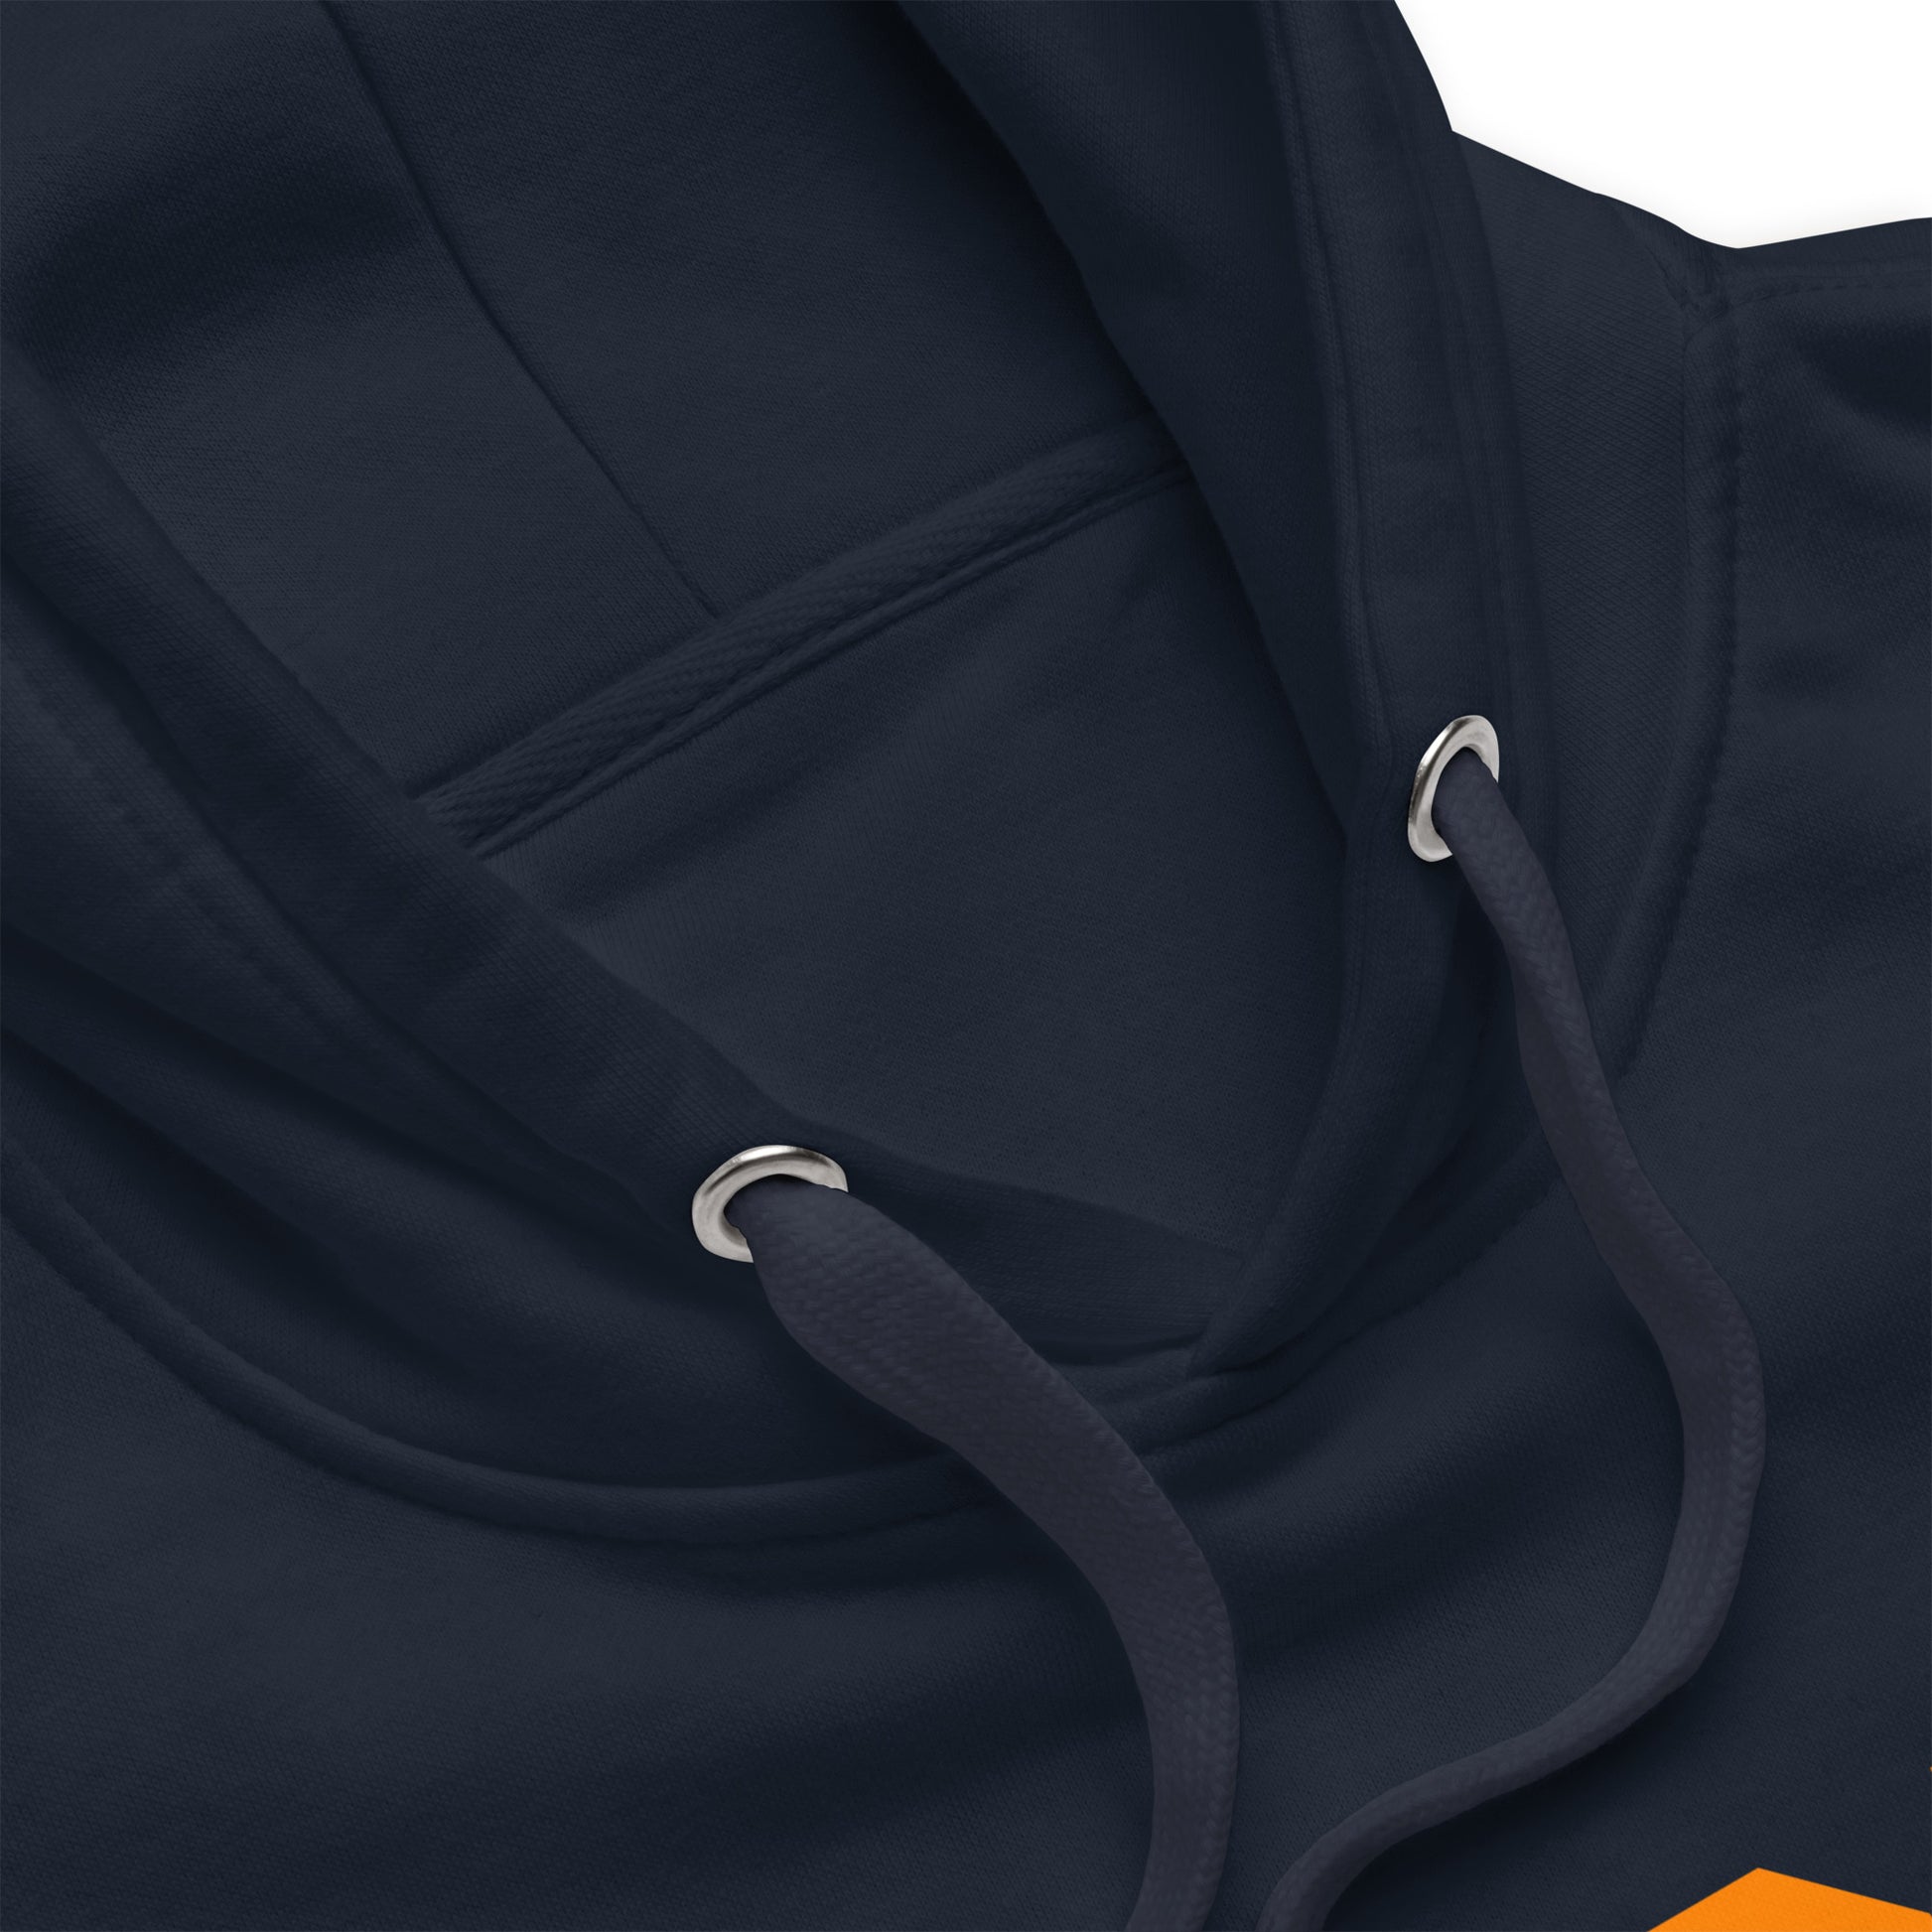 Premium Hoodie - Orange Graphic • YQR Regina • YHM Designs - Image 07